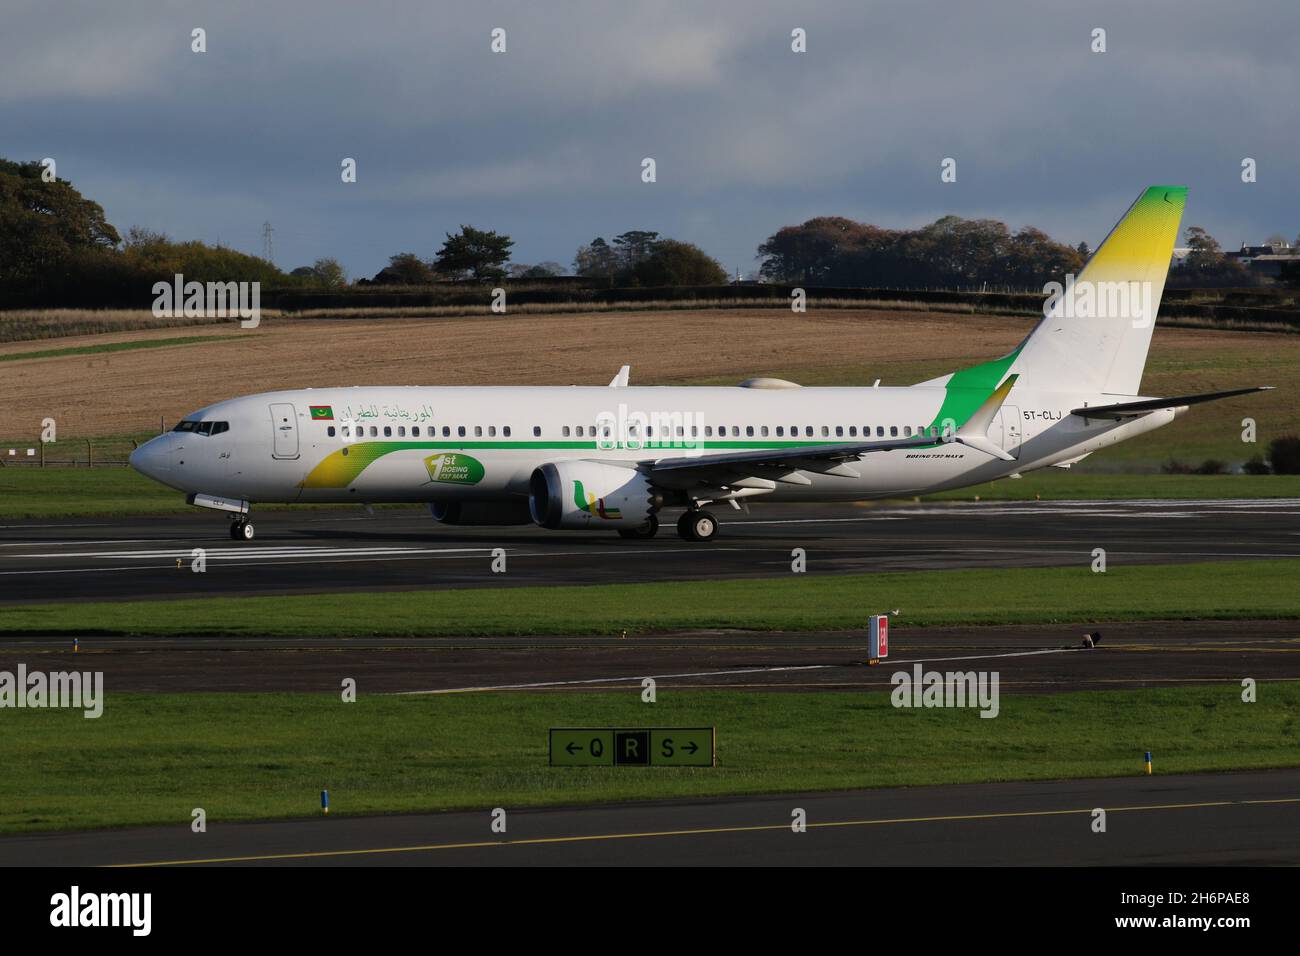 5T-CLJ, un Boeing 737 MAX 8 exploité par Mauritanie Airlines, au départ de l'aéroport international de Prestwick à Ayrshire, en Écosse, l'avion était en Écosse pour amener les délégués mauritaniens à la conférence COP26 sur les changements climatiques qui s'est tenue dans la ville voisine de Glasgow. Banque D'Images